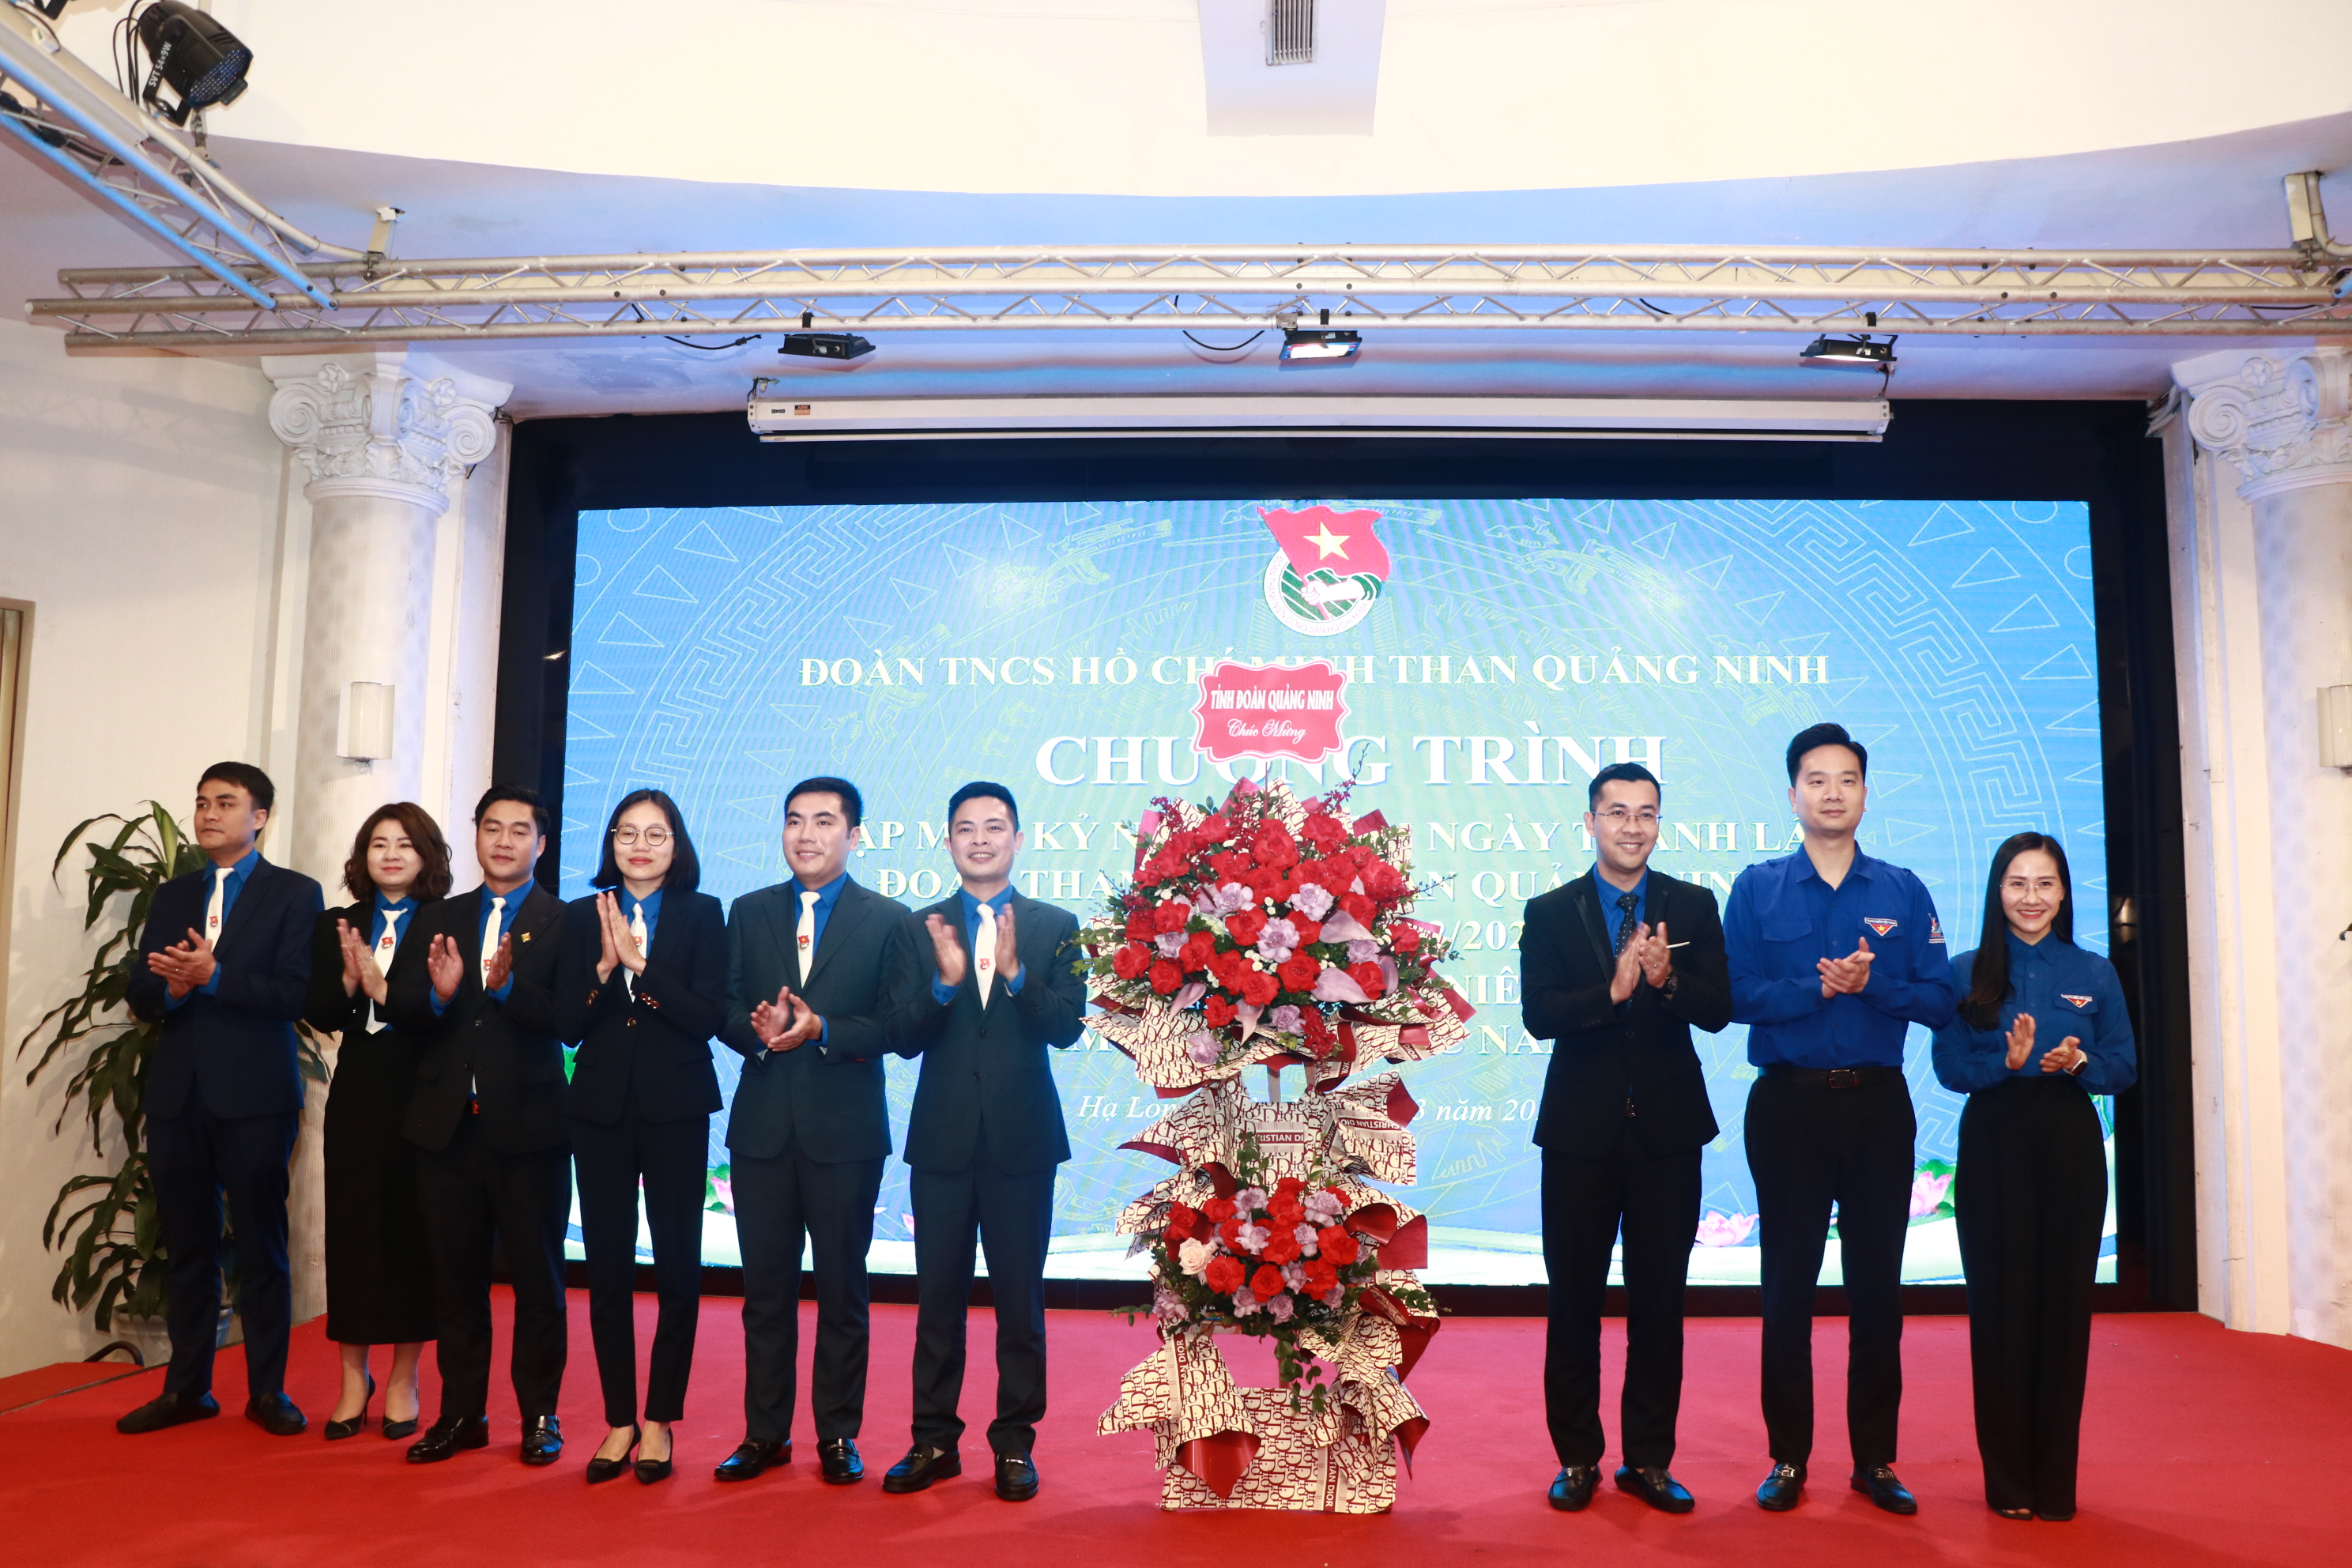 Đoàn Than Quảng Ninh: 25 năm xây dựng, cống hiến và trưởng thành